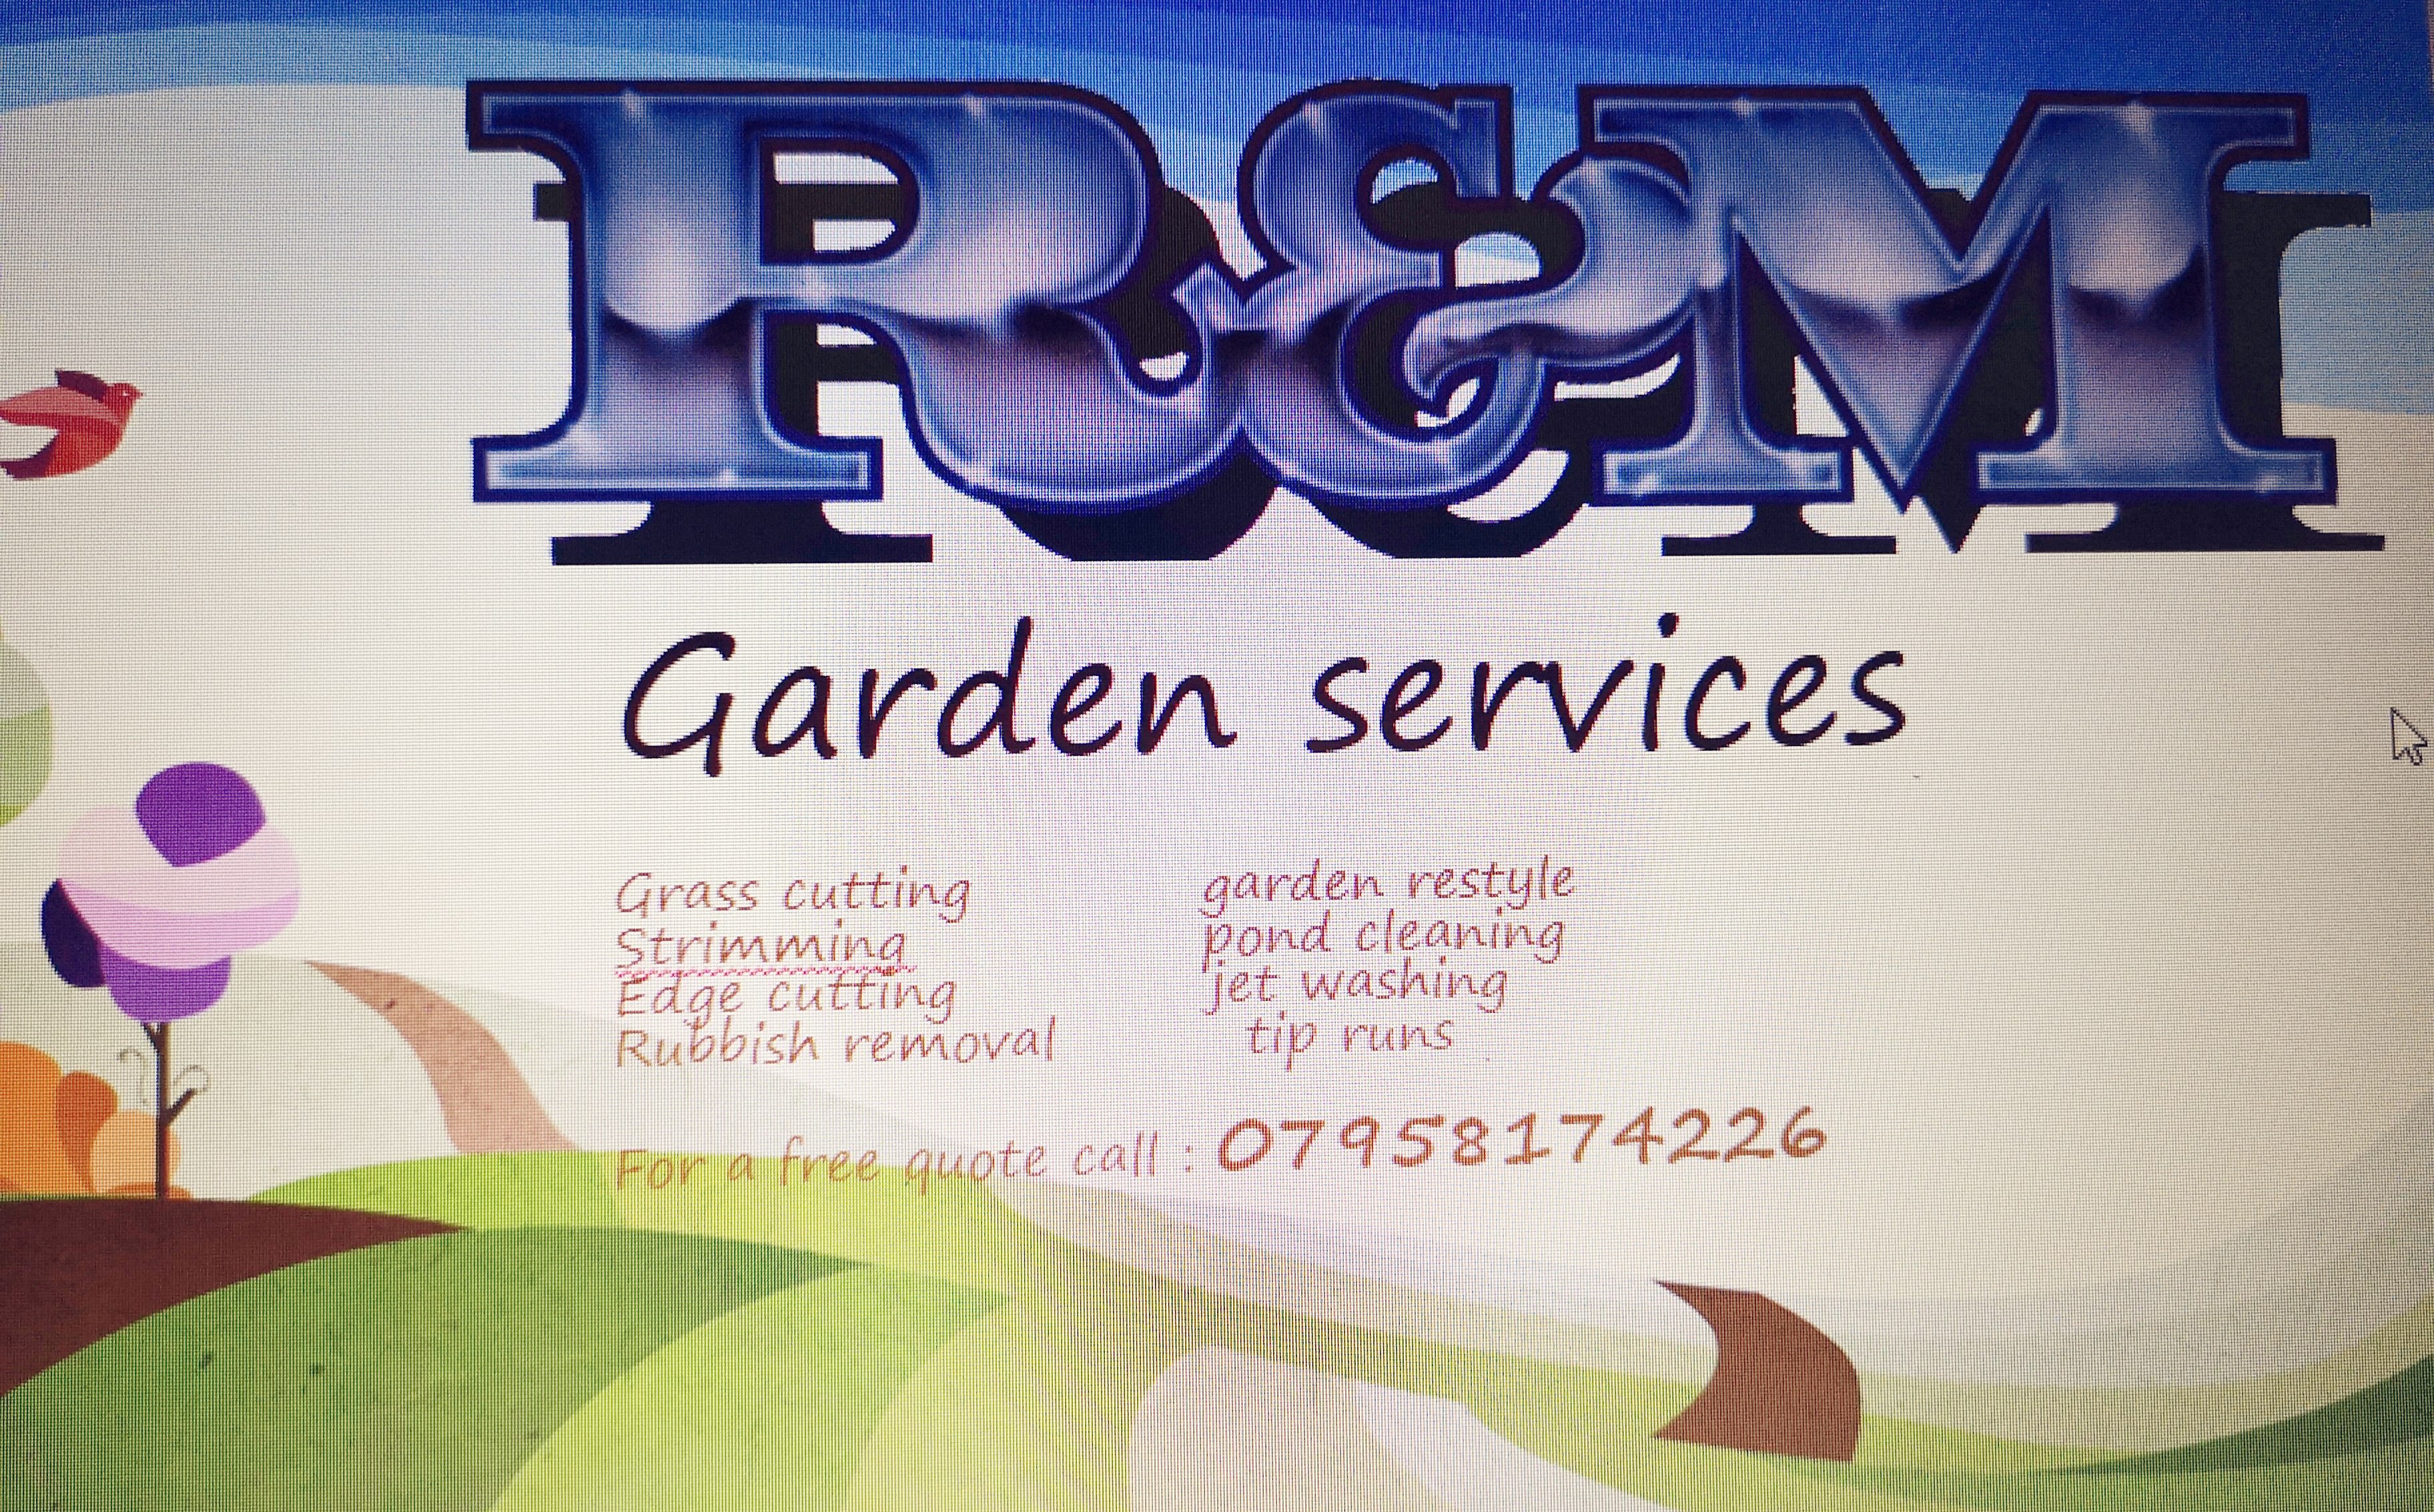 R&M Garden Services